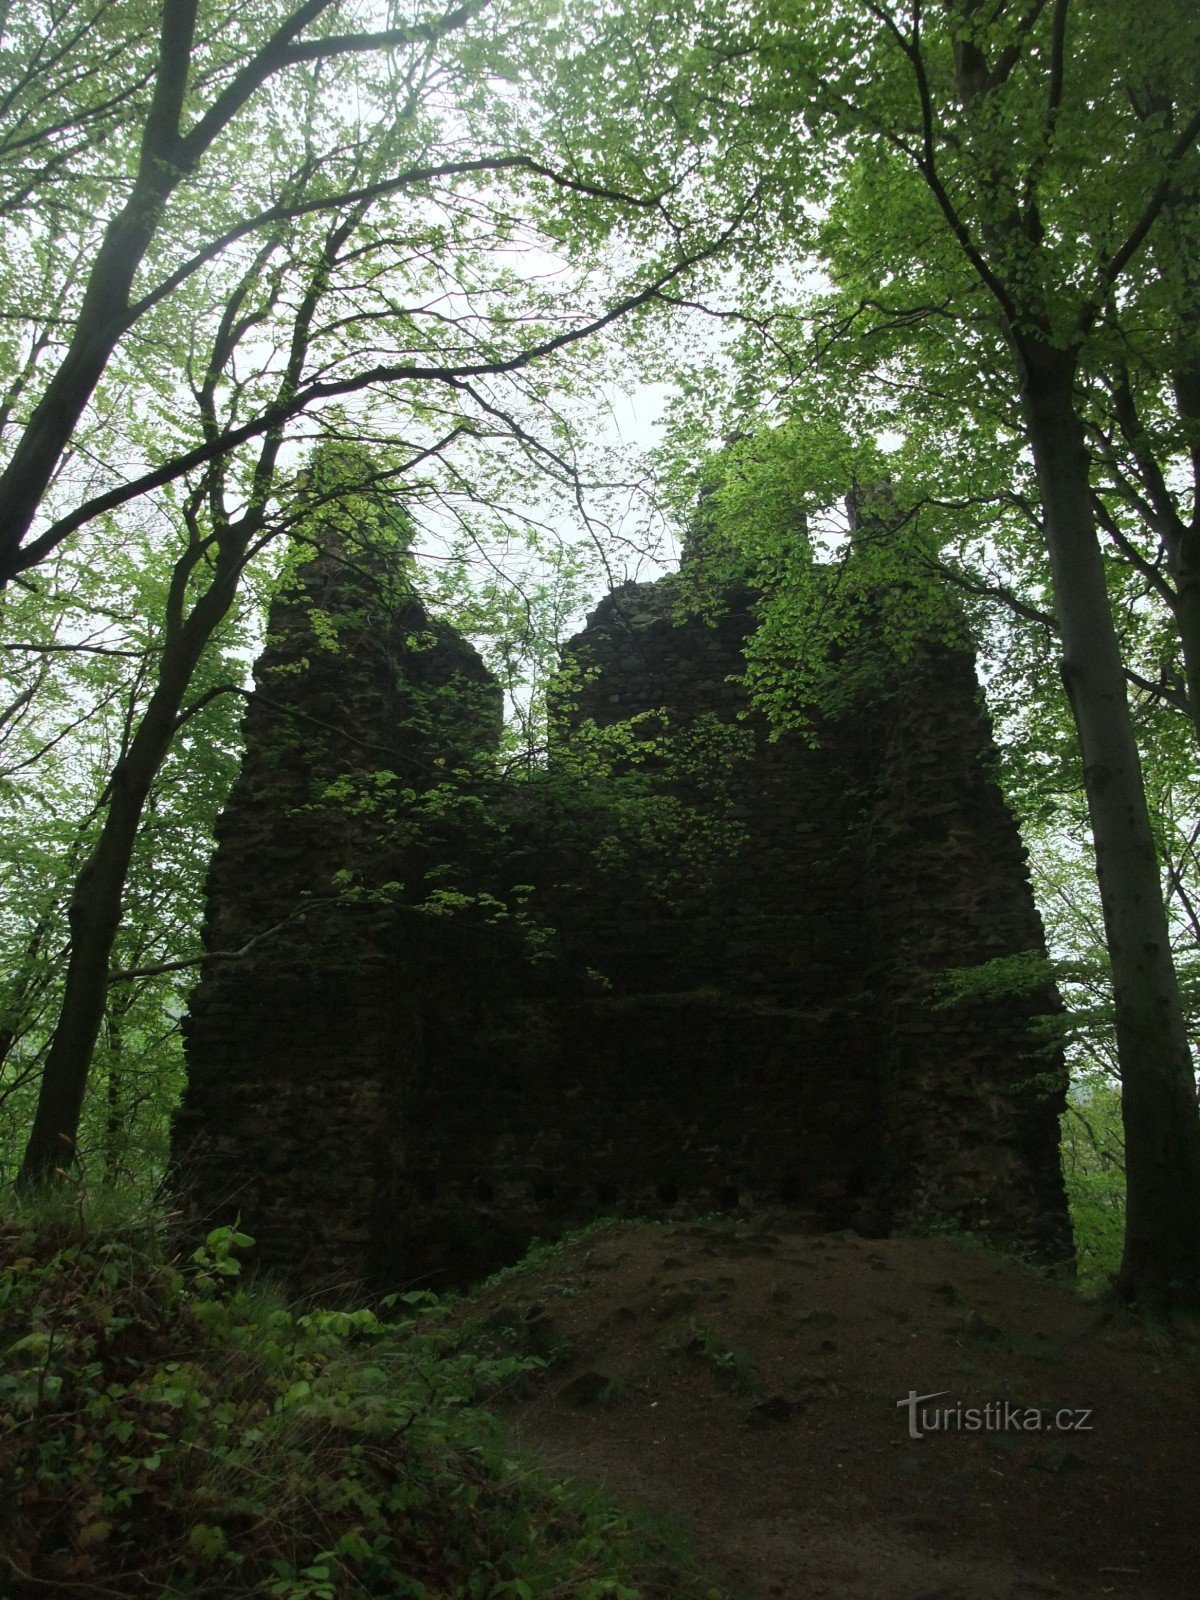 Le mystérieux château de Kyšperk dans les monts Métallifères